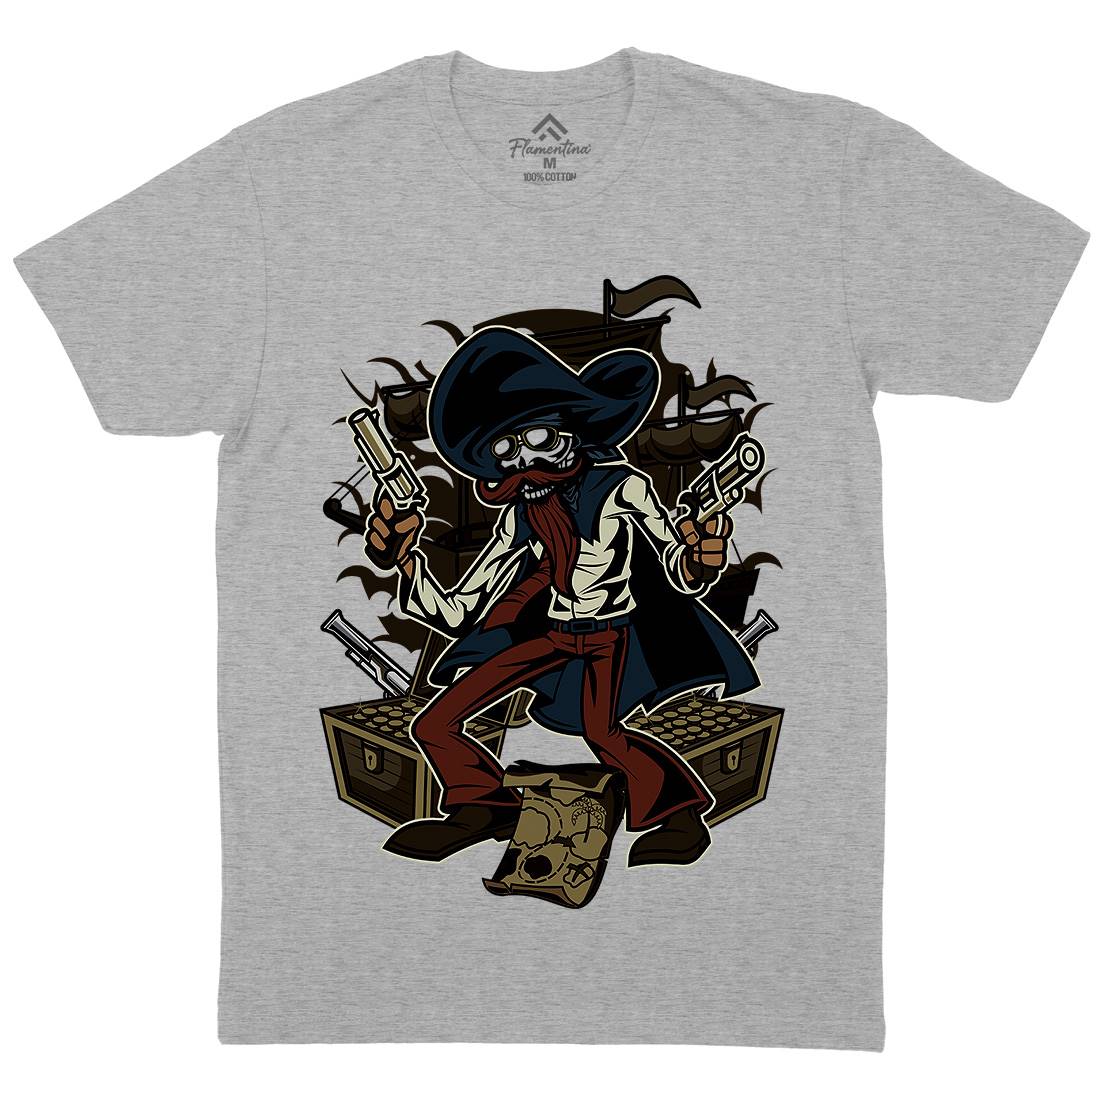 Pirate Treasure Mens Organic Crew Neck T-Shirt Navy C420